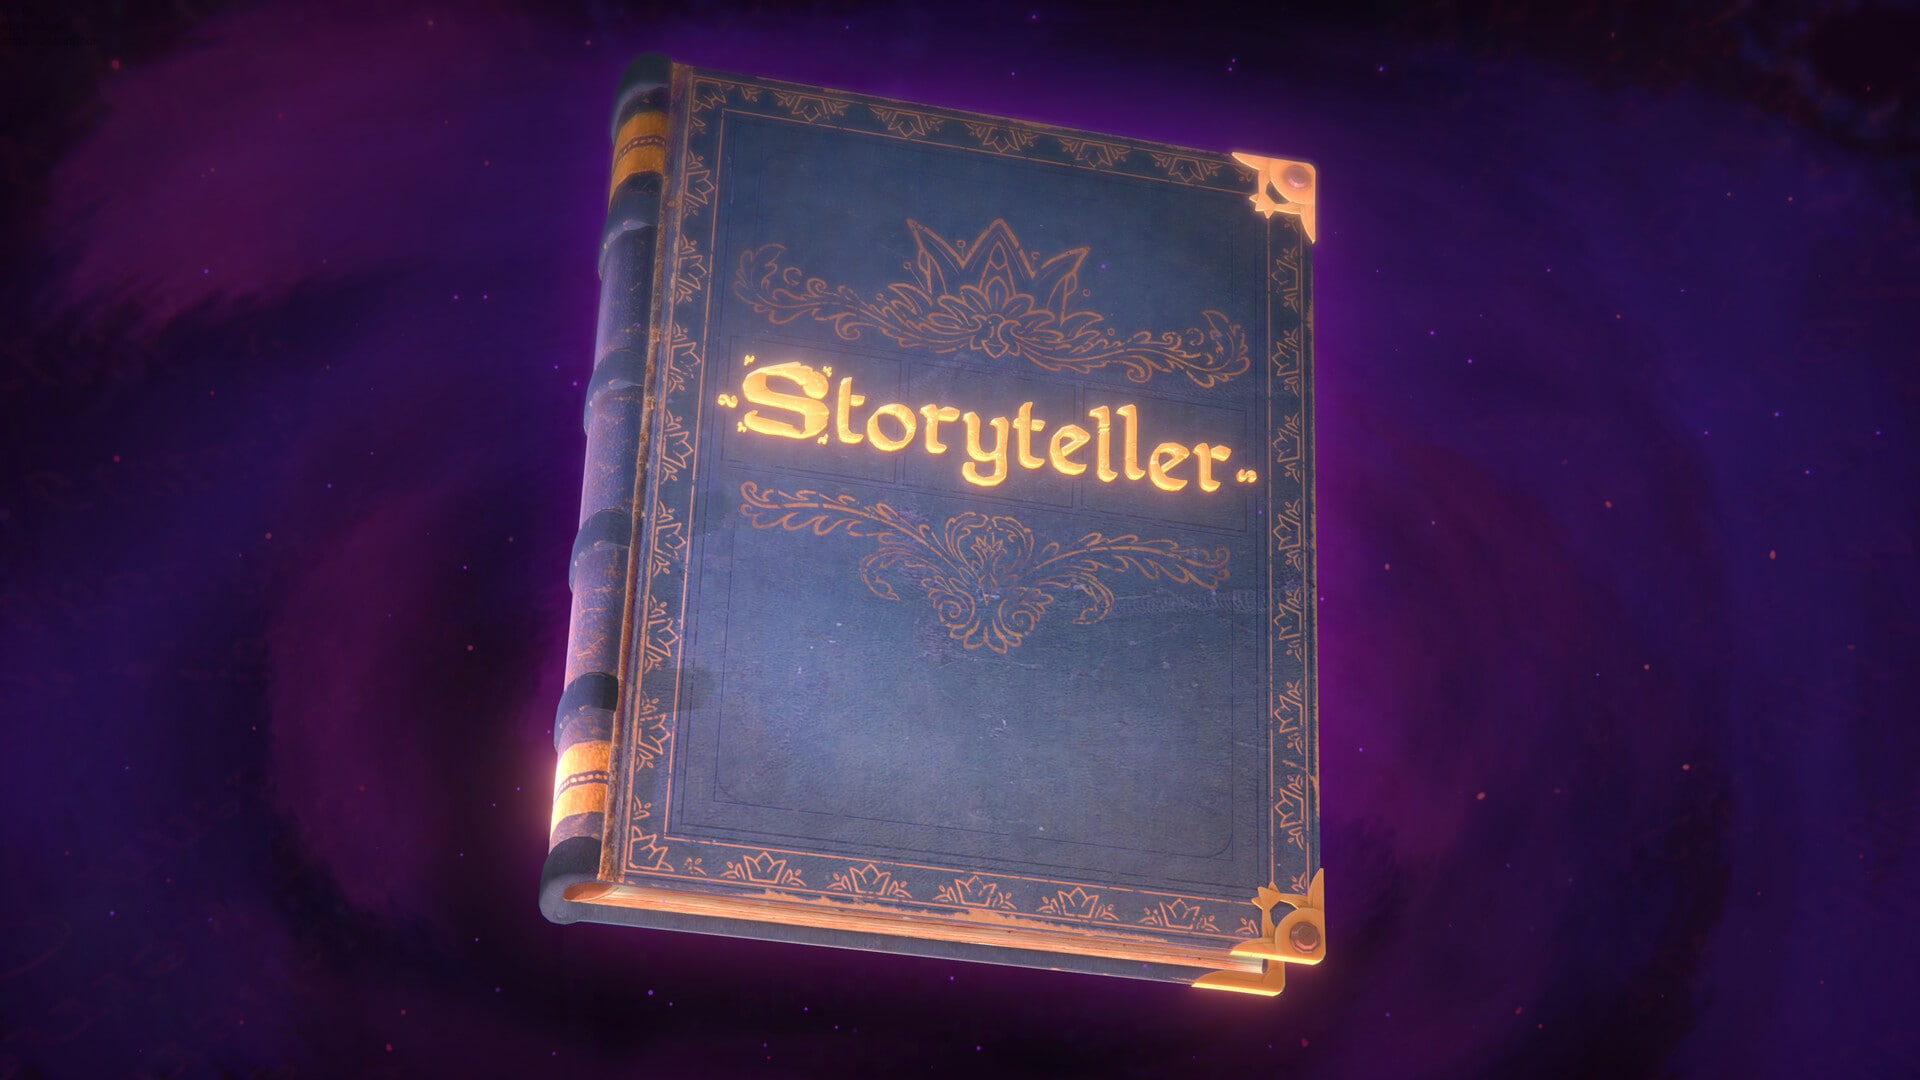 100+ Free Storyteller & Storytelling Images - Pixabay